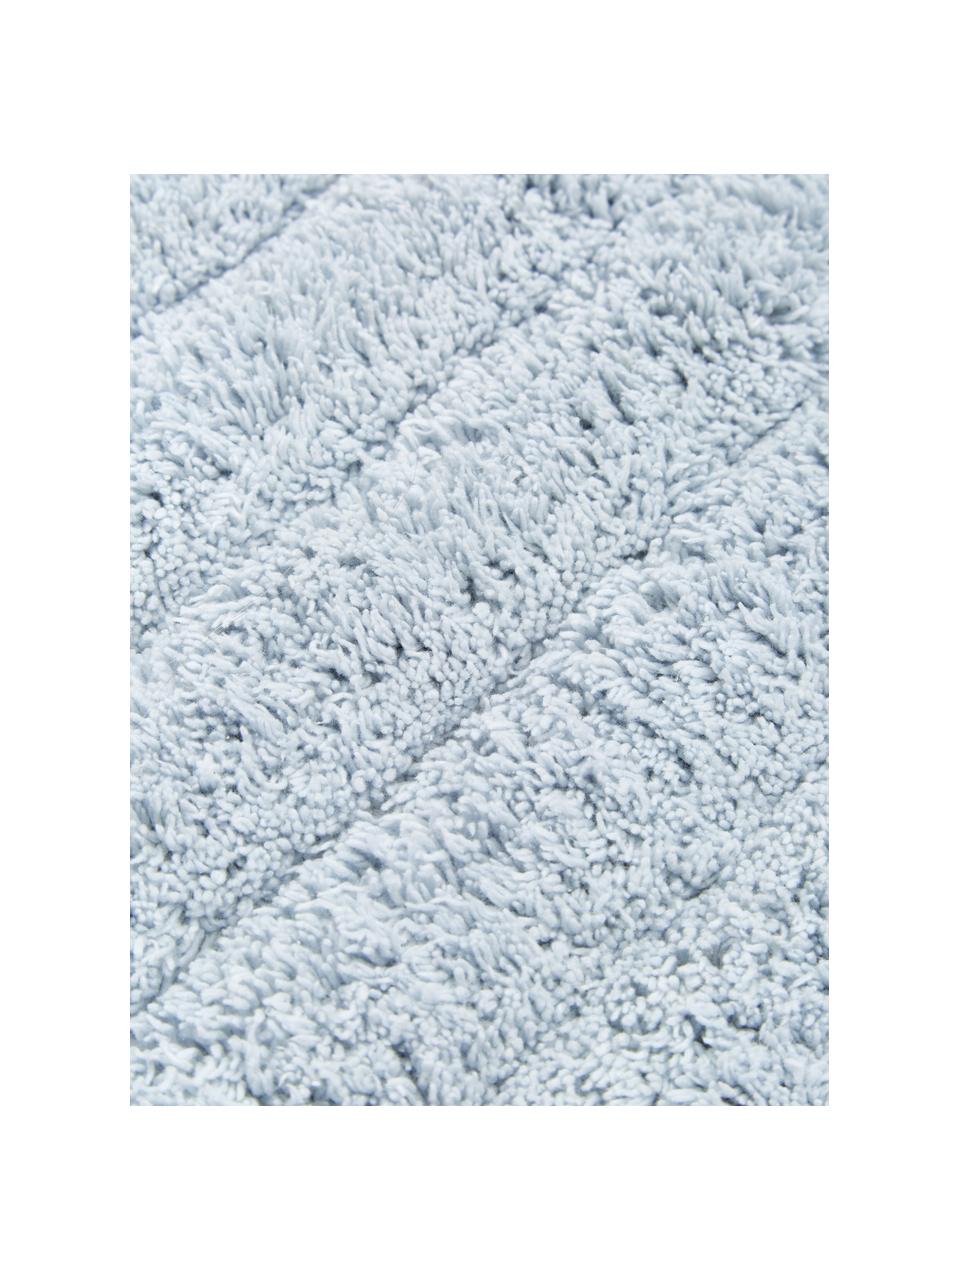 Tappeto bagno morbido azzurro Board, Cotone, qualità pesante, 1900 g/m², Azzurro, Larg. 50 x Lung. 60 cm